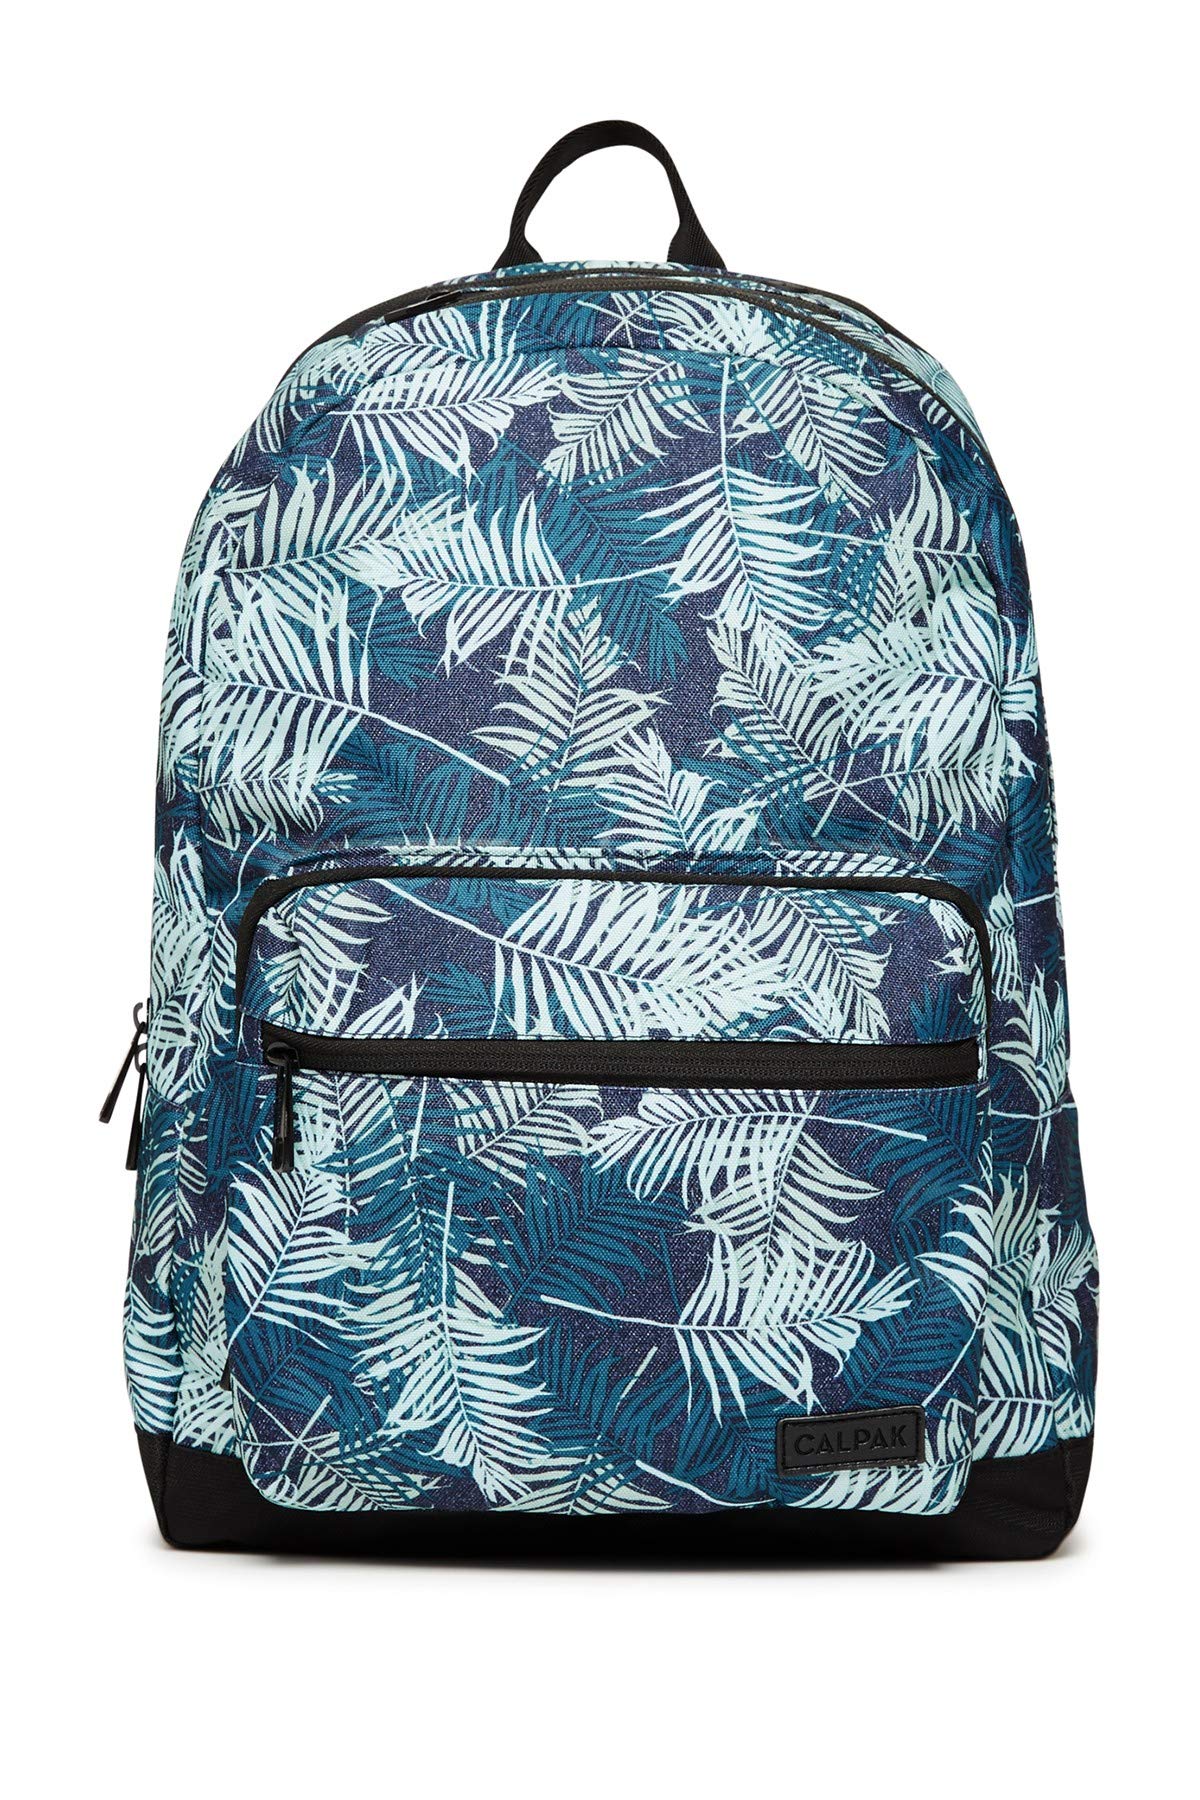 CALPAK Luggage Glenroe Travel Backpack for Men, Palm Leaf - image 1 of 6